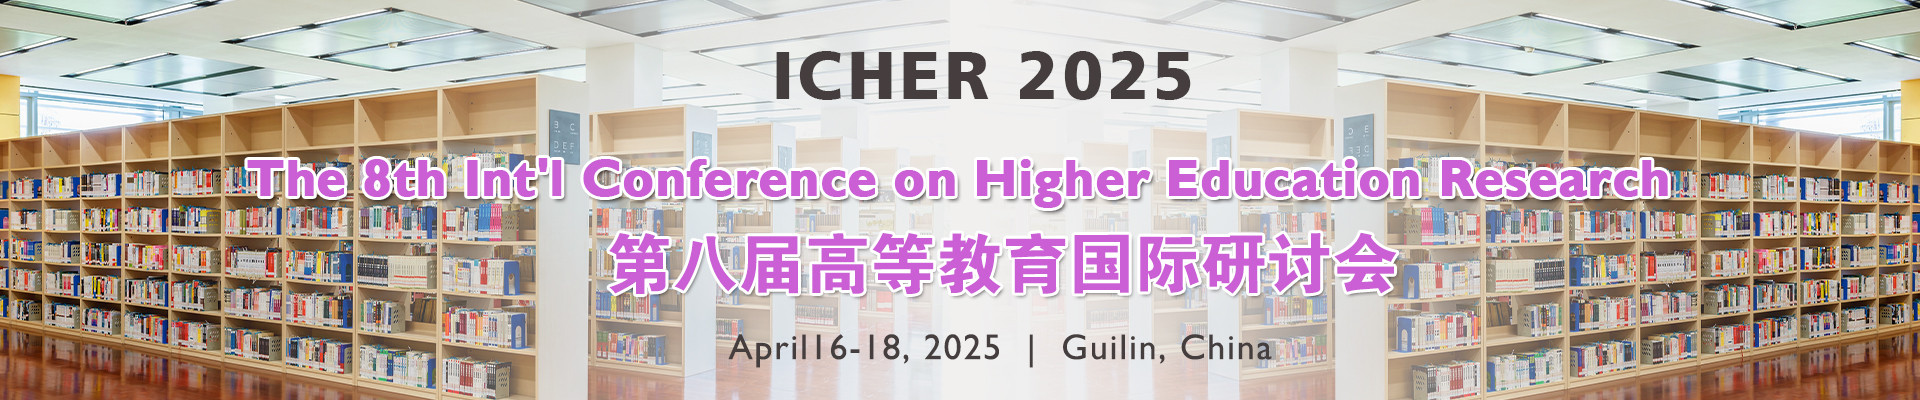 第八届高等教育国际研讨会 (ICHER 2025)